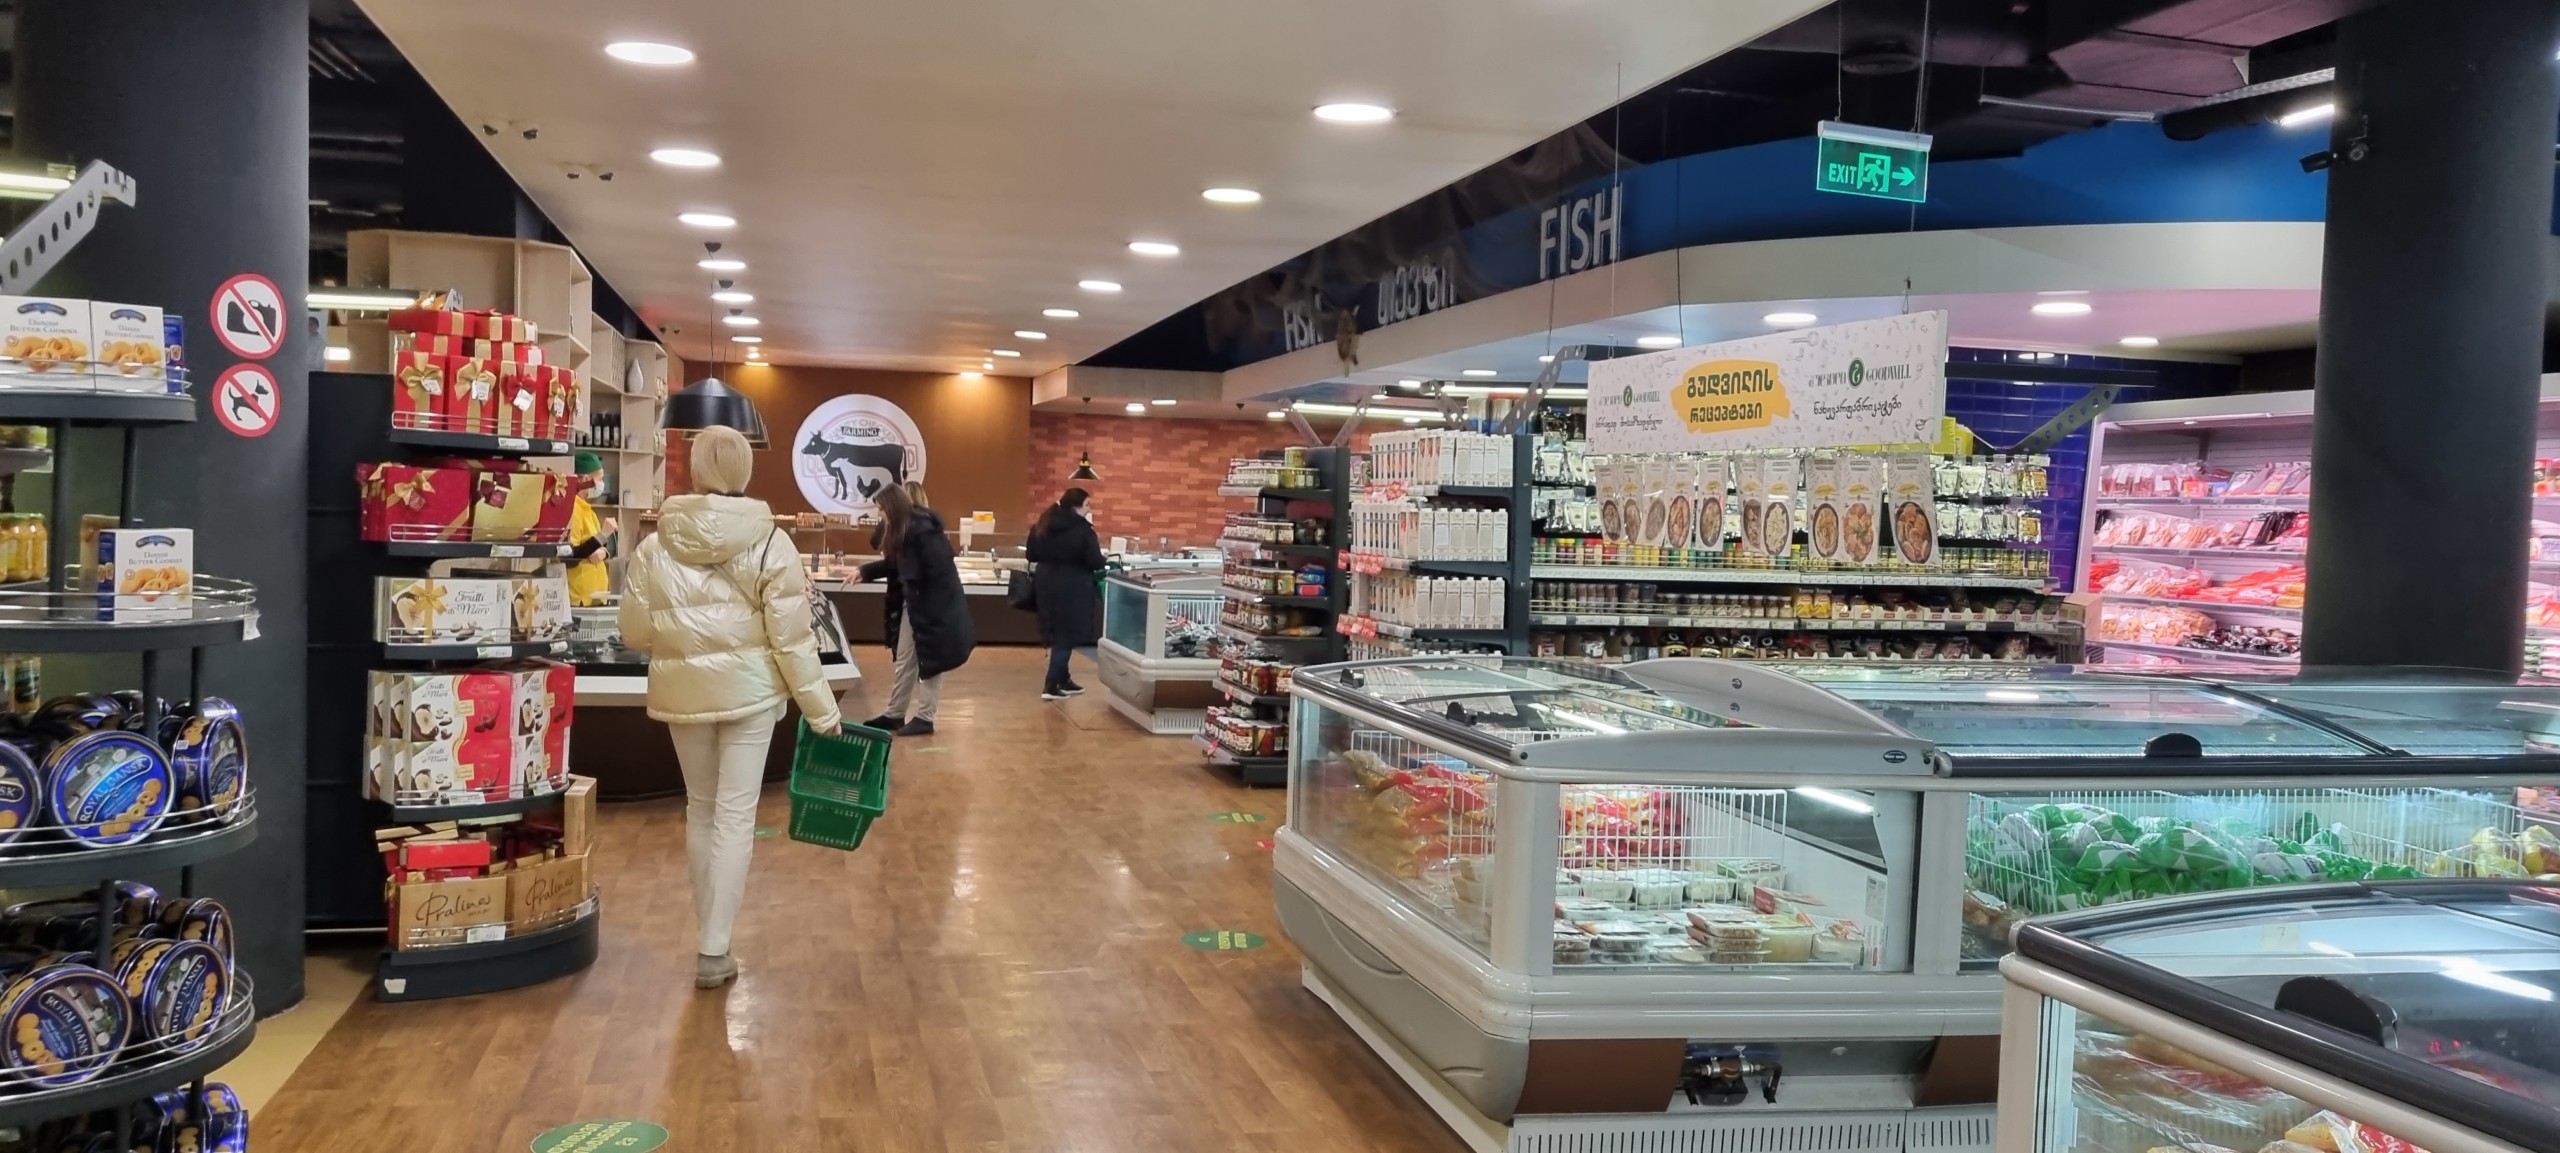 Супермаркет «Goodwill» в торговом центре «Galleria» посещает множество туристов и гостей столицы Грузии